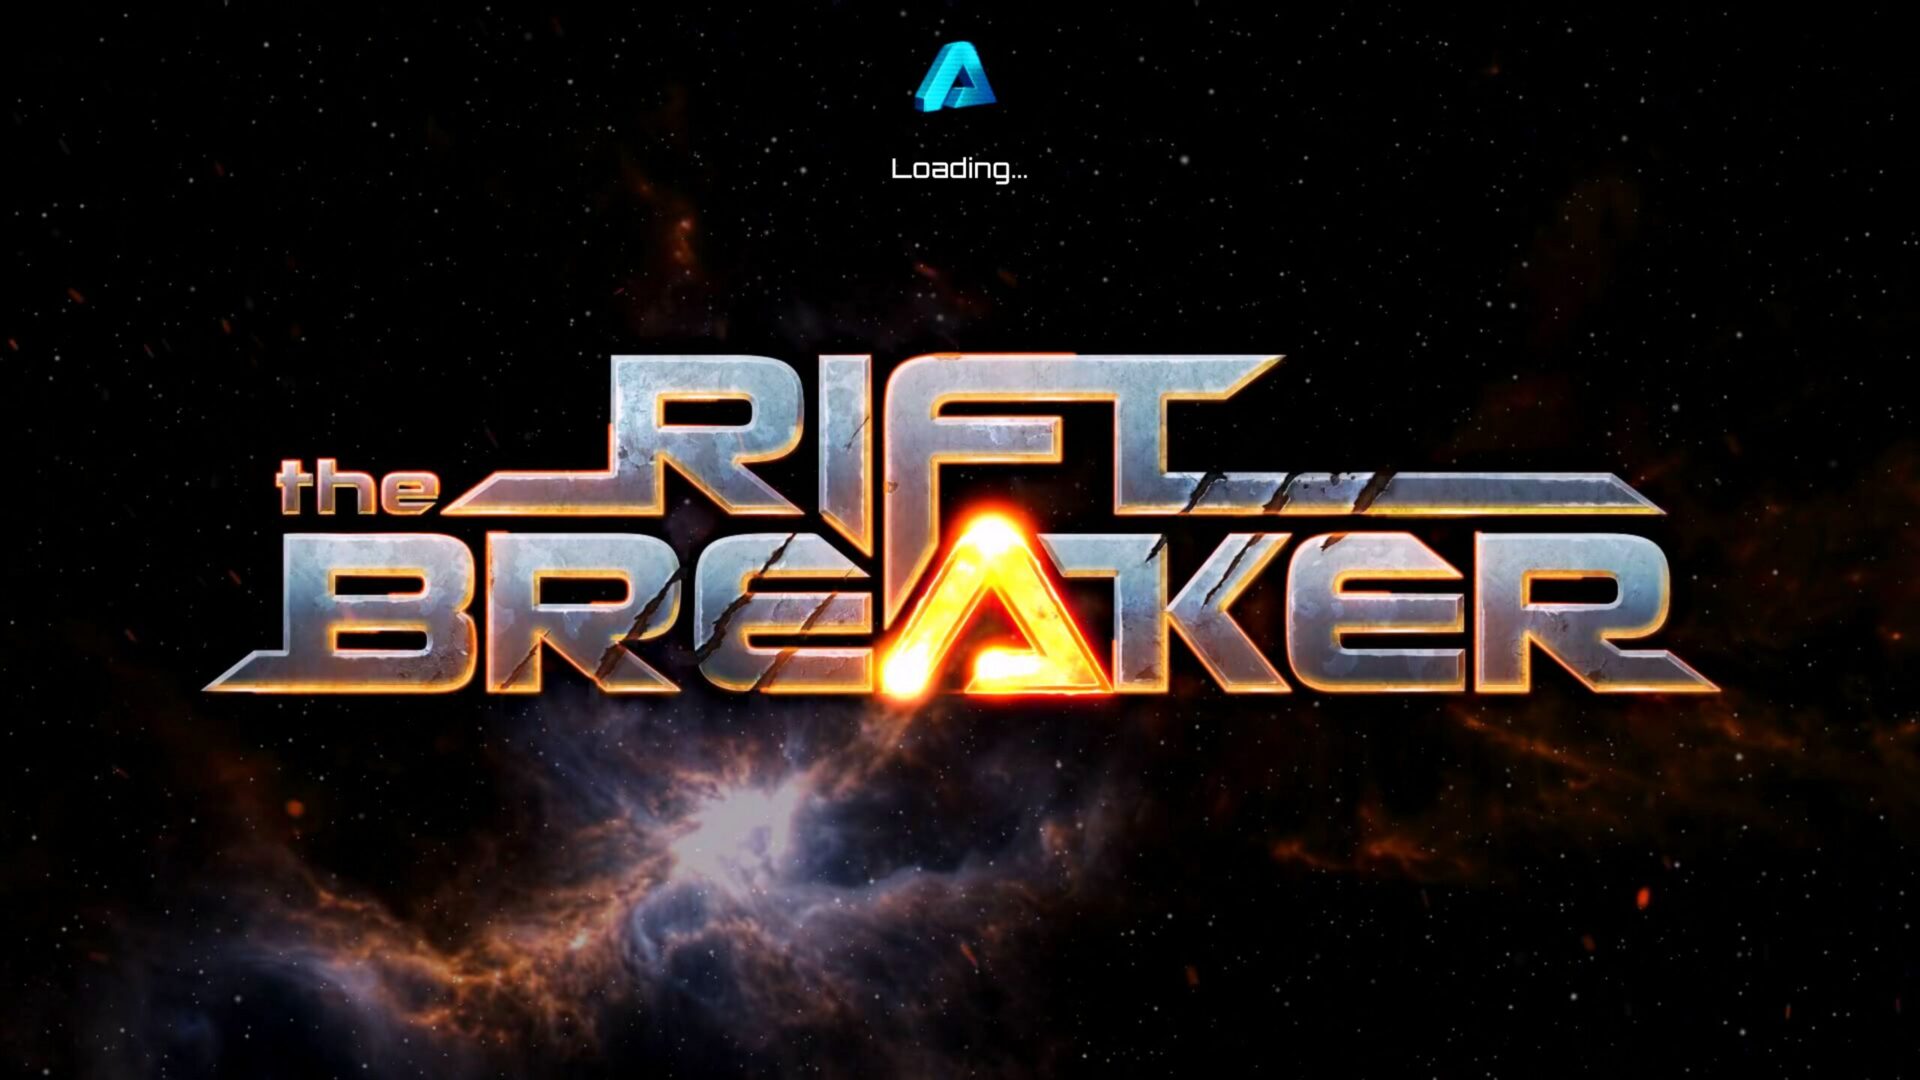 The Riftbreaker intro